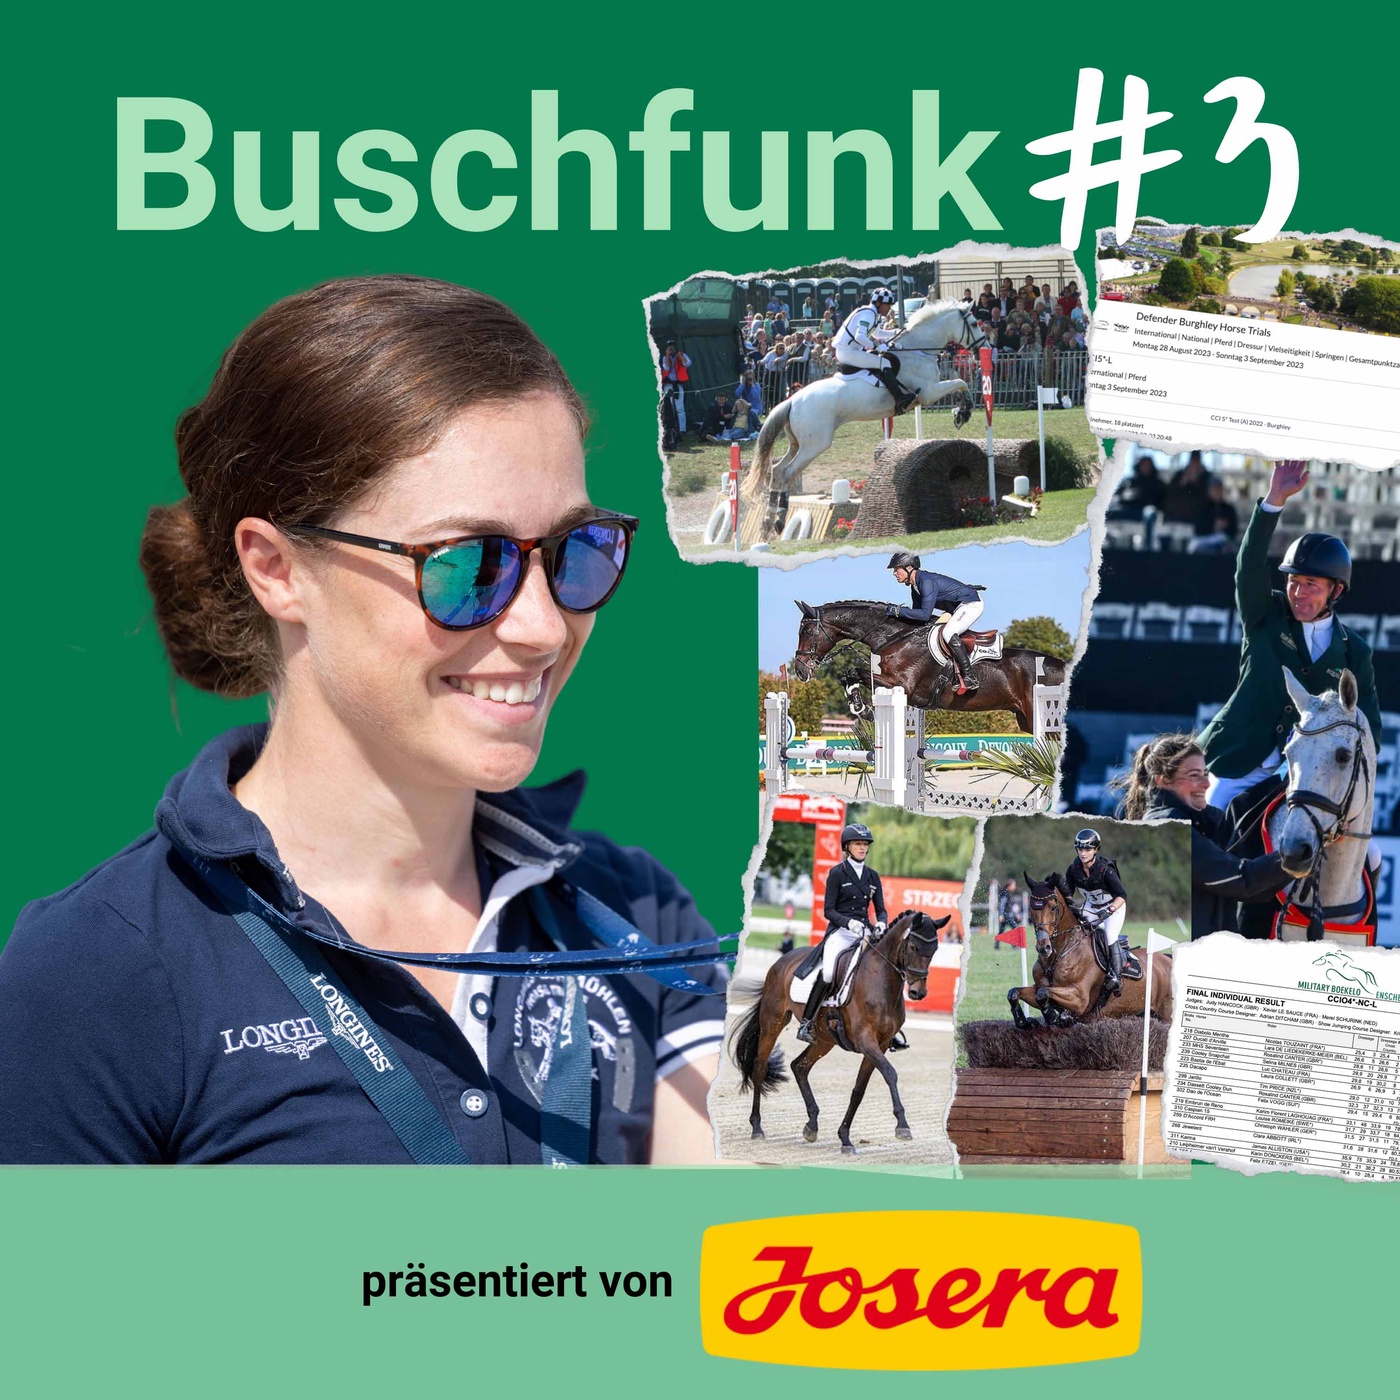 STAFFEL 4 FOLGE #23 – Buschfunk #3 – Die wichtigsten News aus der Vielseitigkeit präsentiert von Josera Pferdefutter